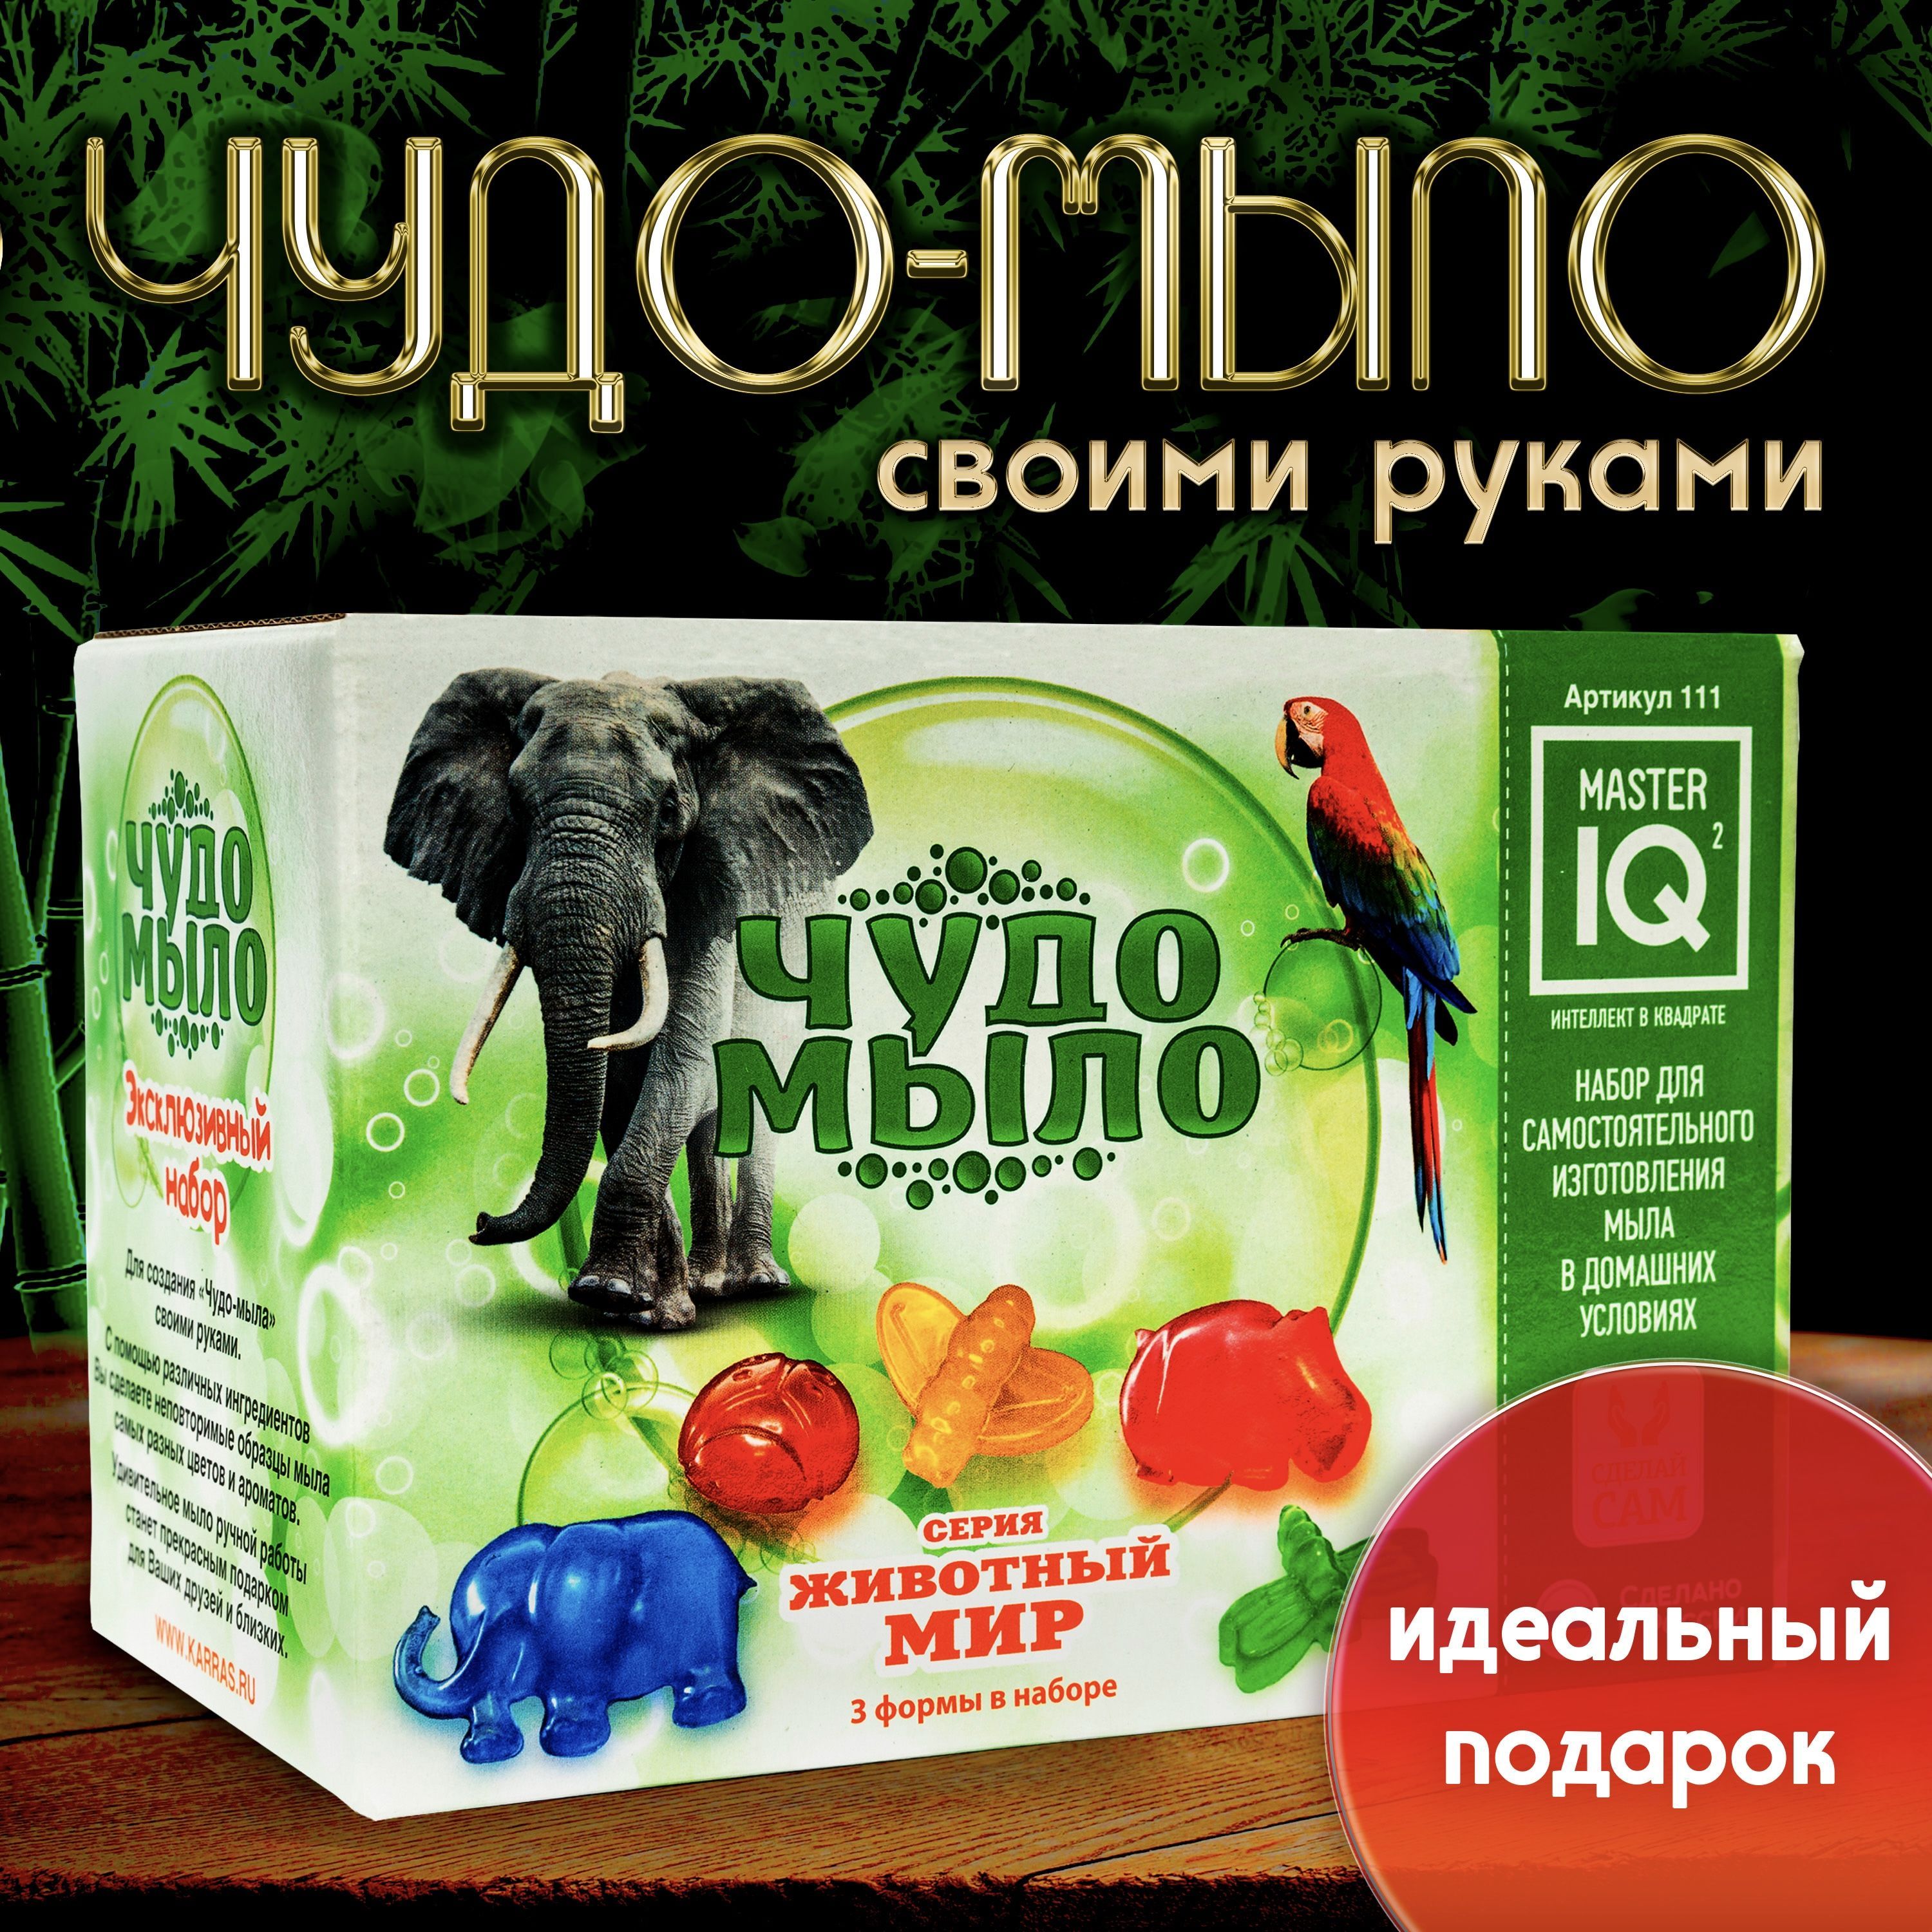 Набор мыло Арт - Фрукты от Дети АРТ, даsim - купить в интернет-магазине luchistii-sudak.ru